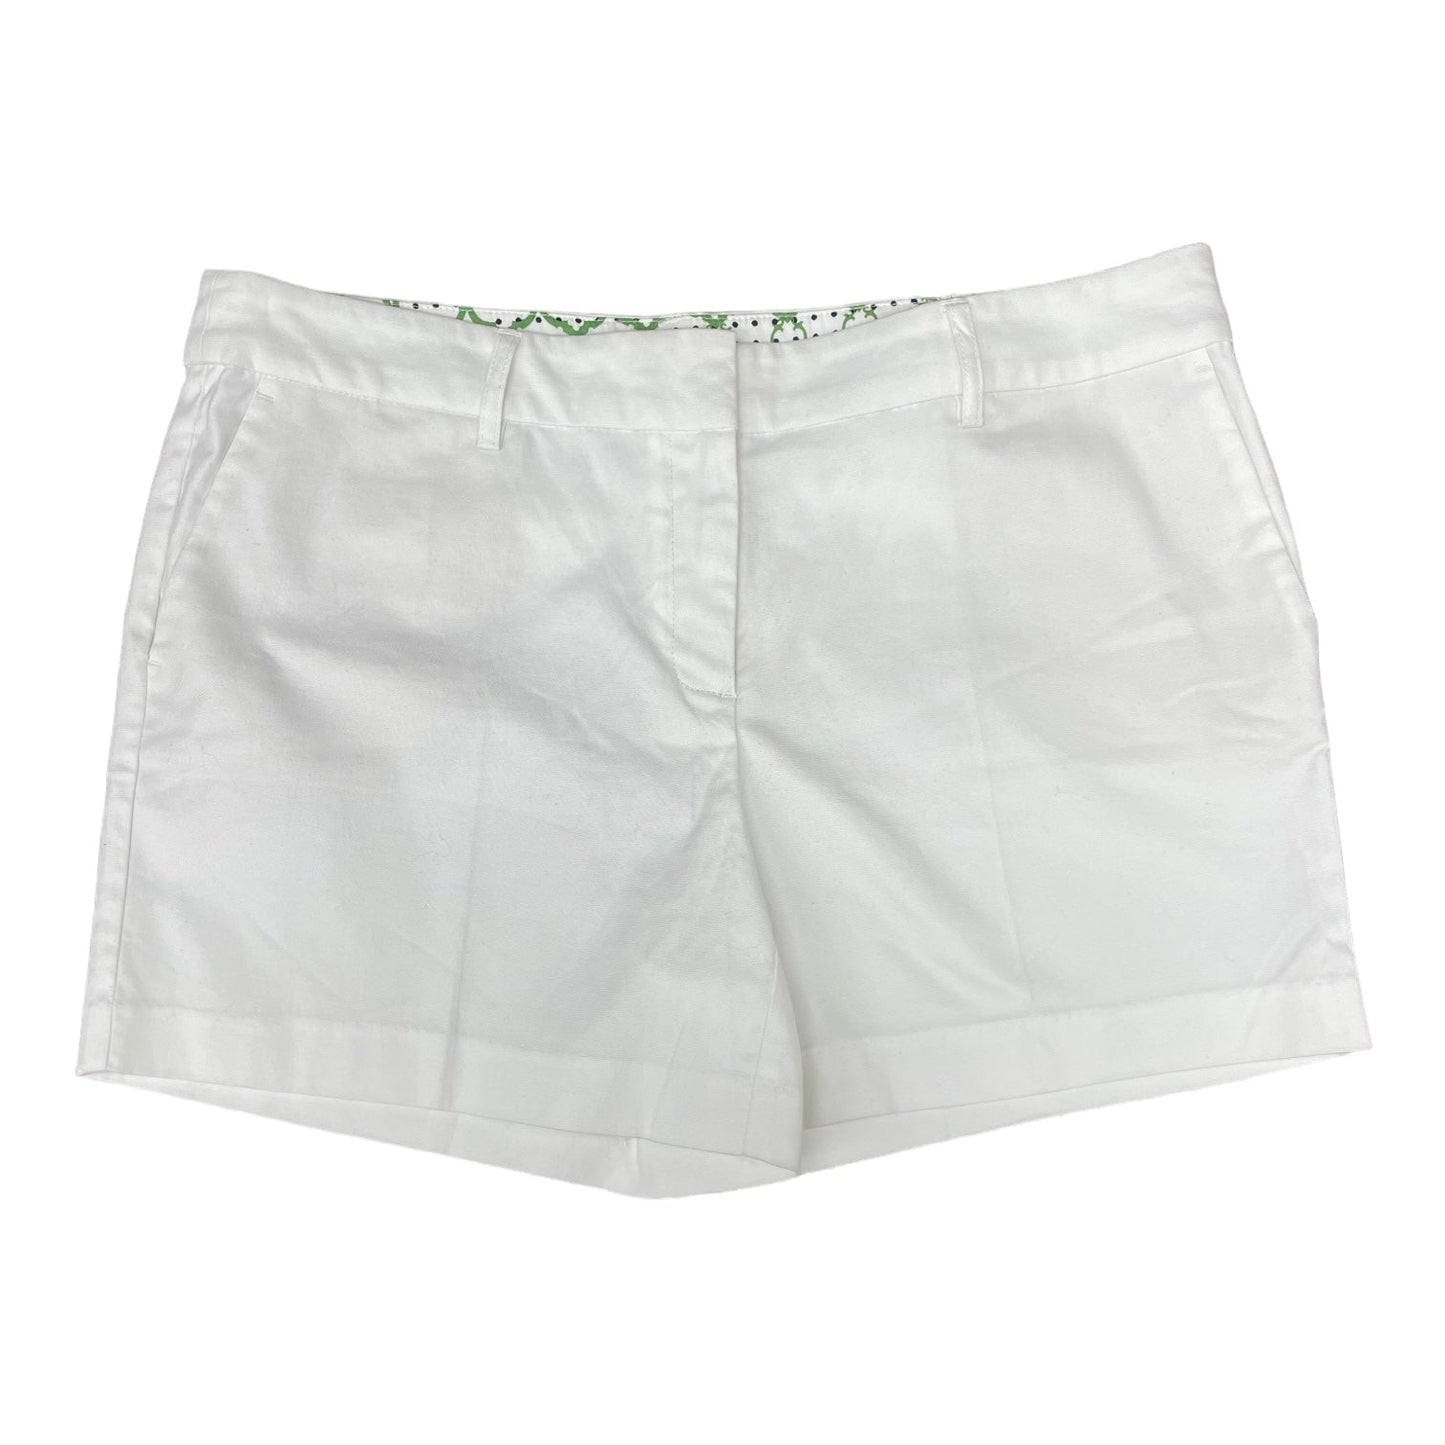 White Shorts Kenar, Size 12